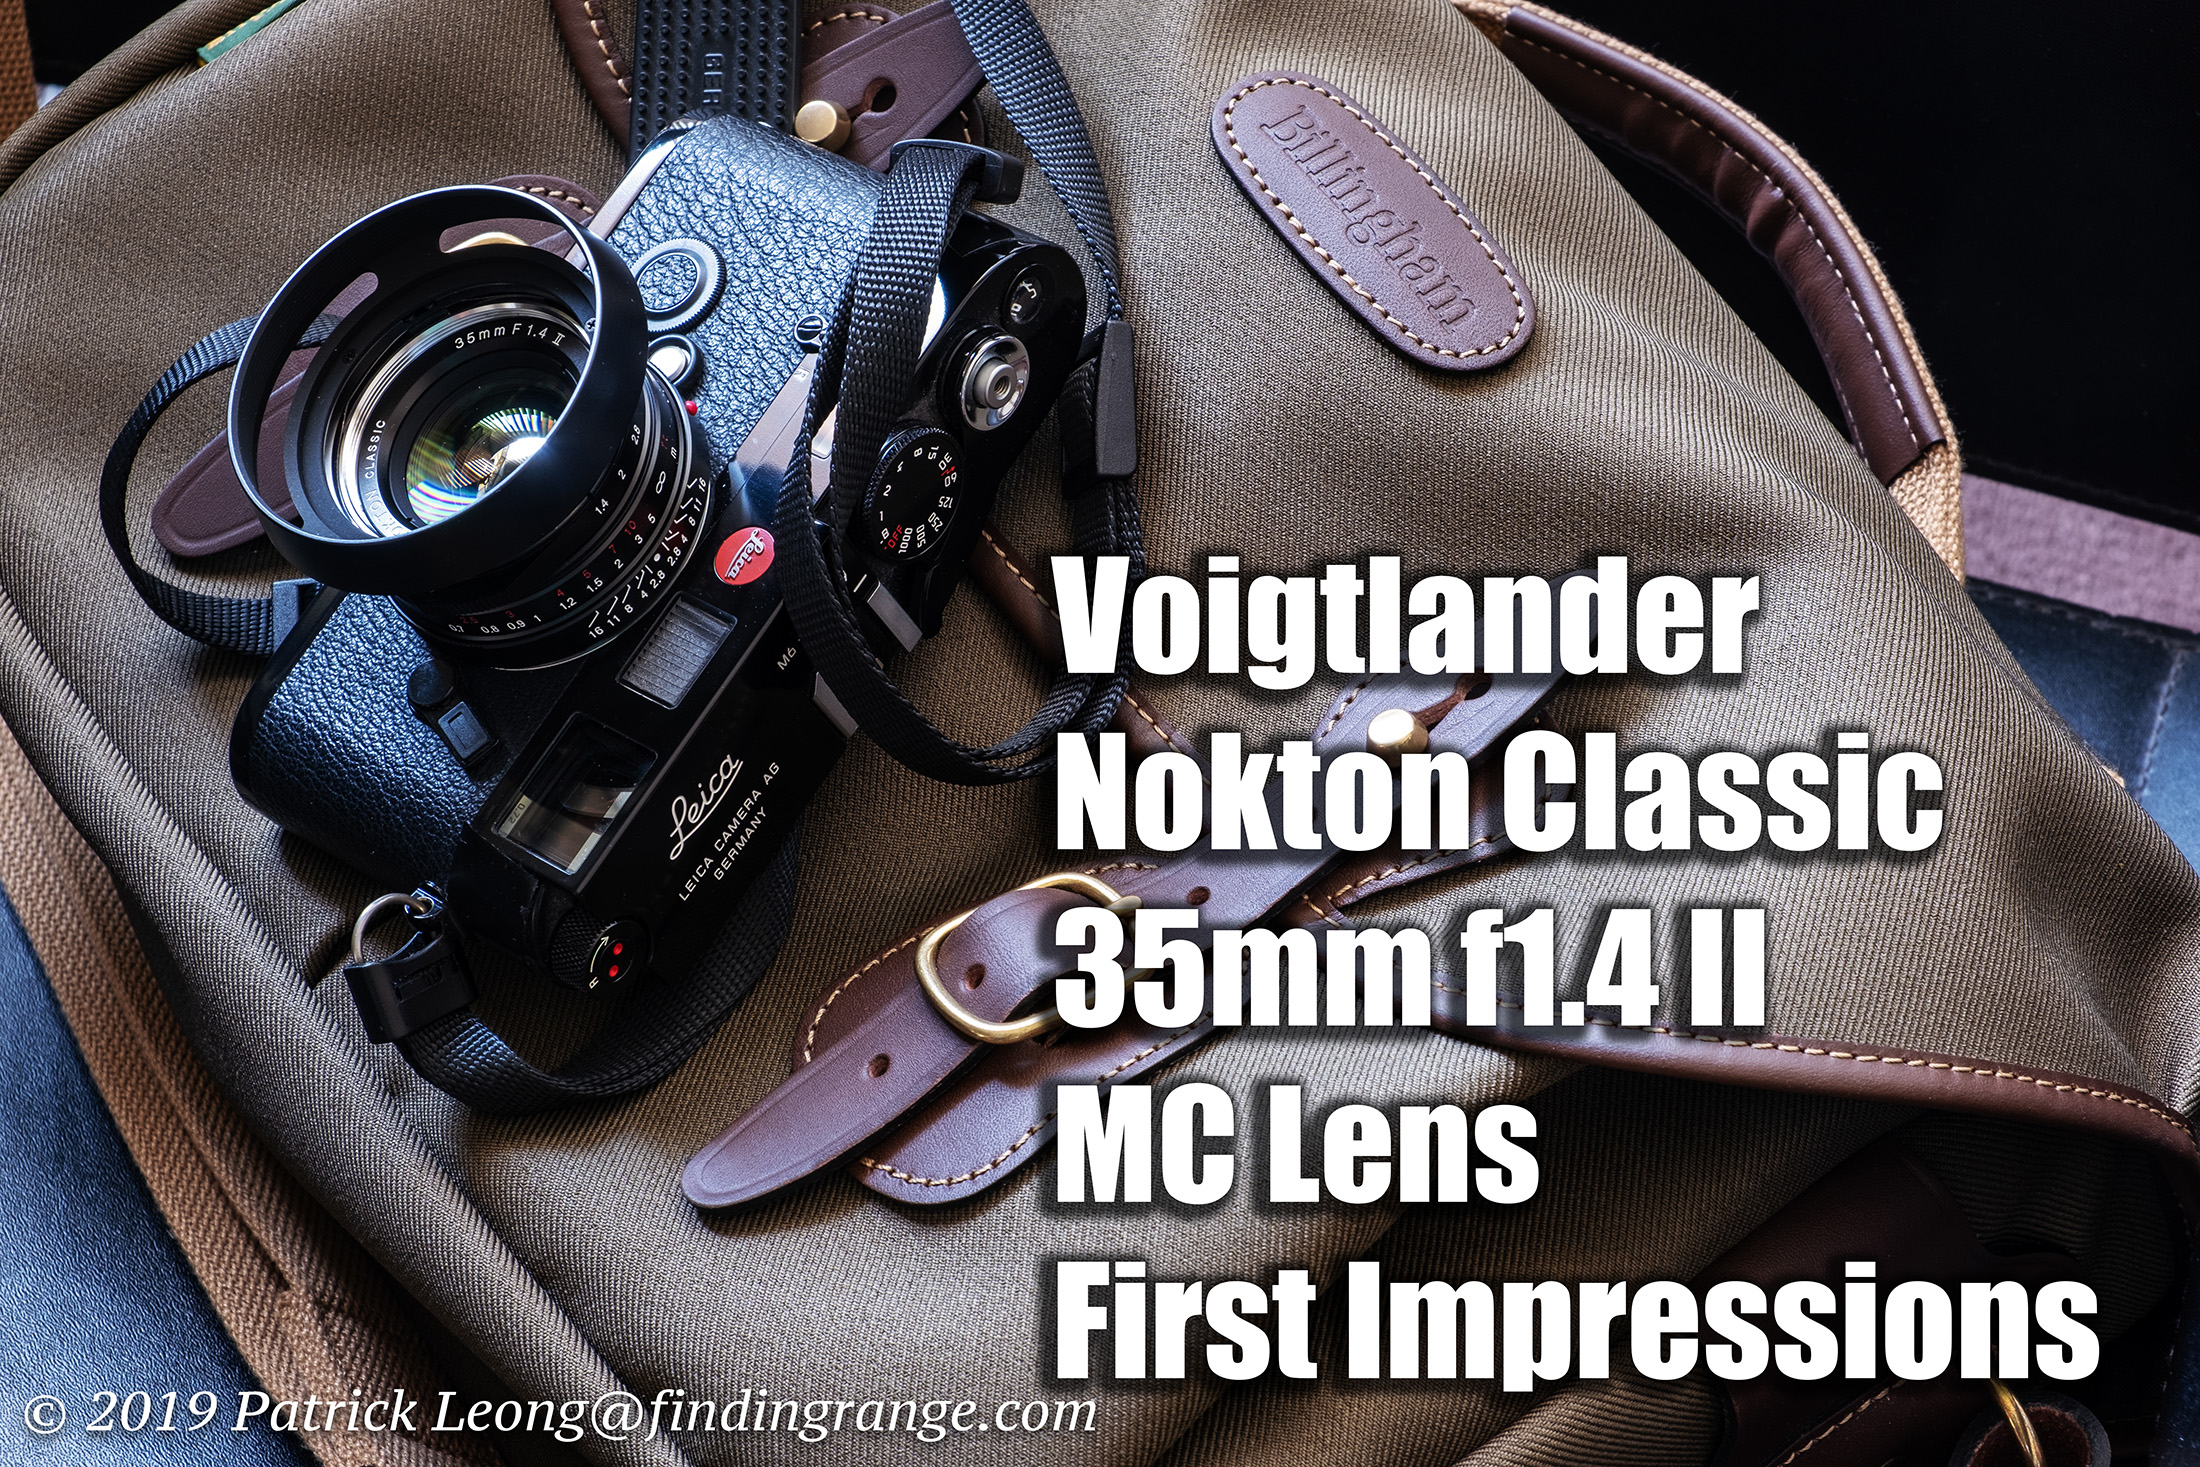 Voigtlander Nokton Classic 35mm f1.4 II MC Lens First Impressions